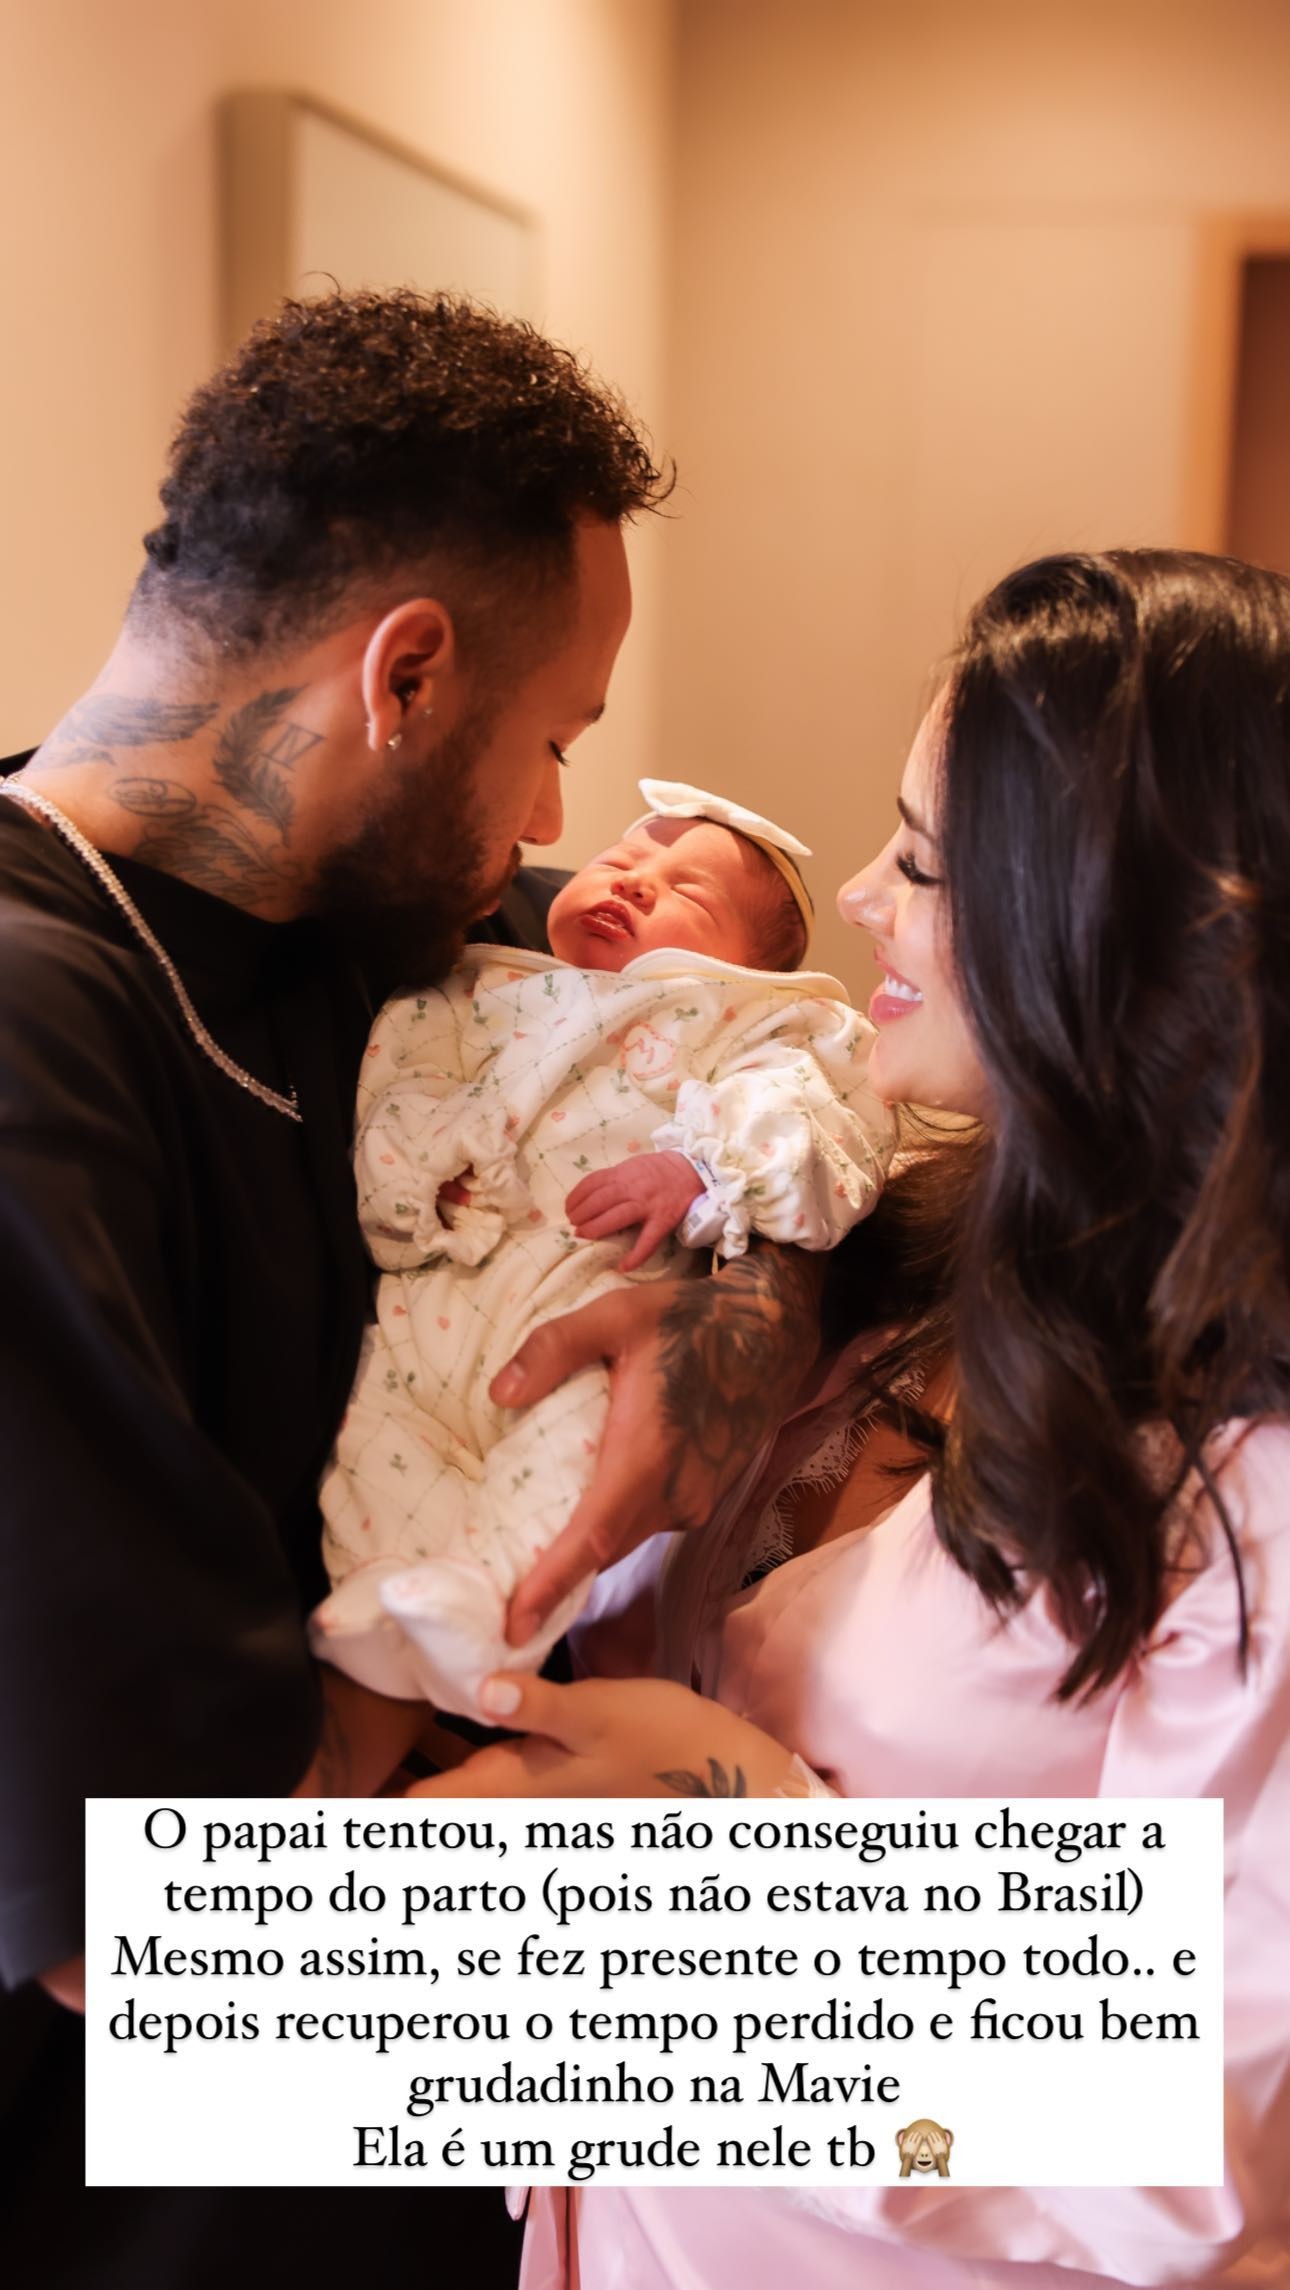 Neymar Jr no llegó a presenciar el nacimiento de su hija Mavie y pudo conocerla días después / Foto: Instagram